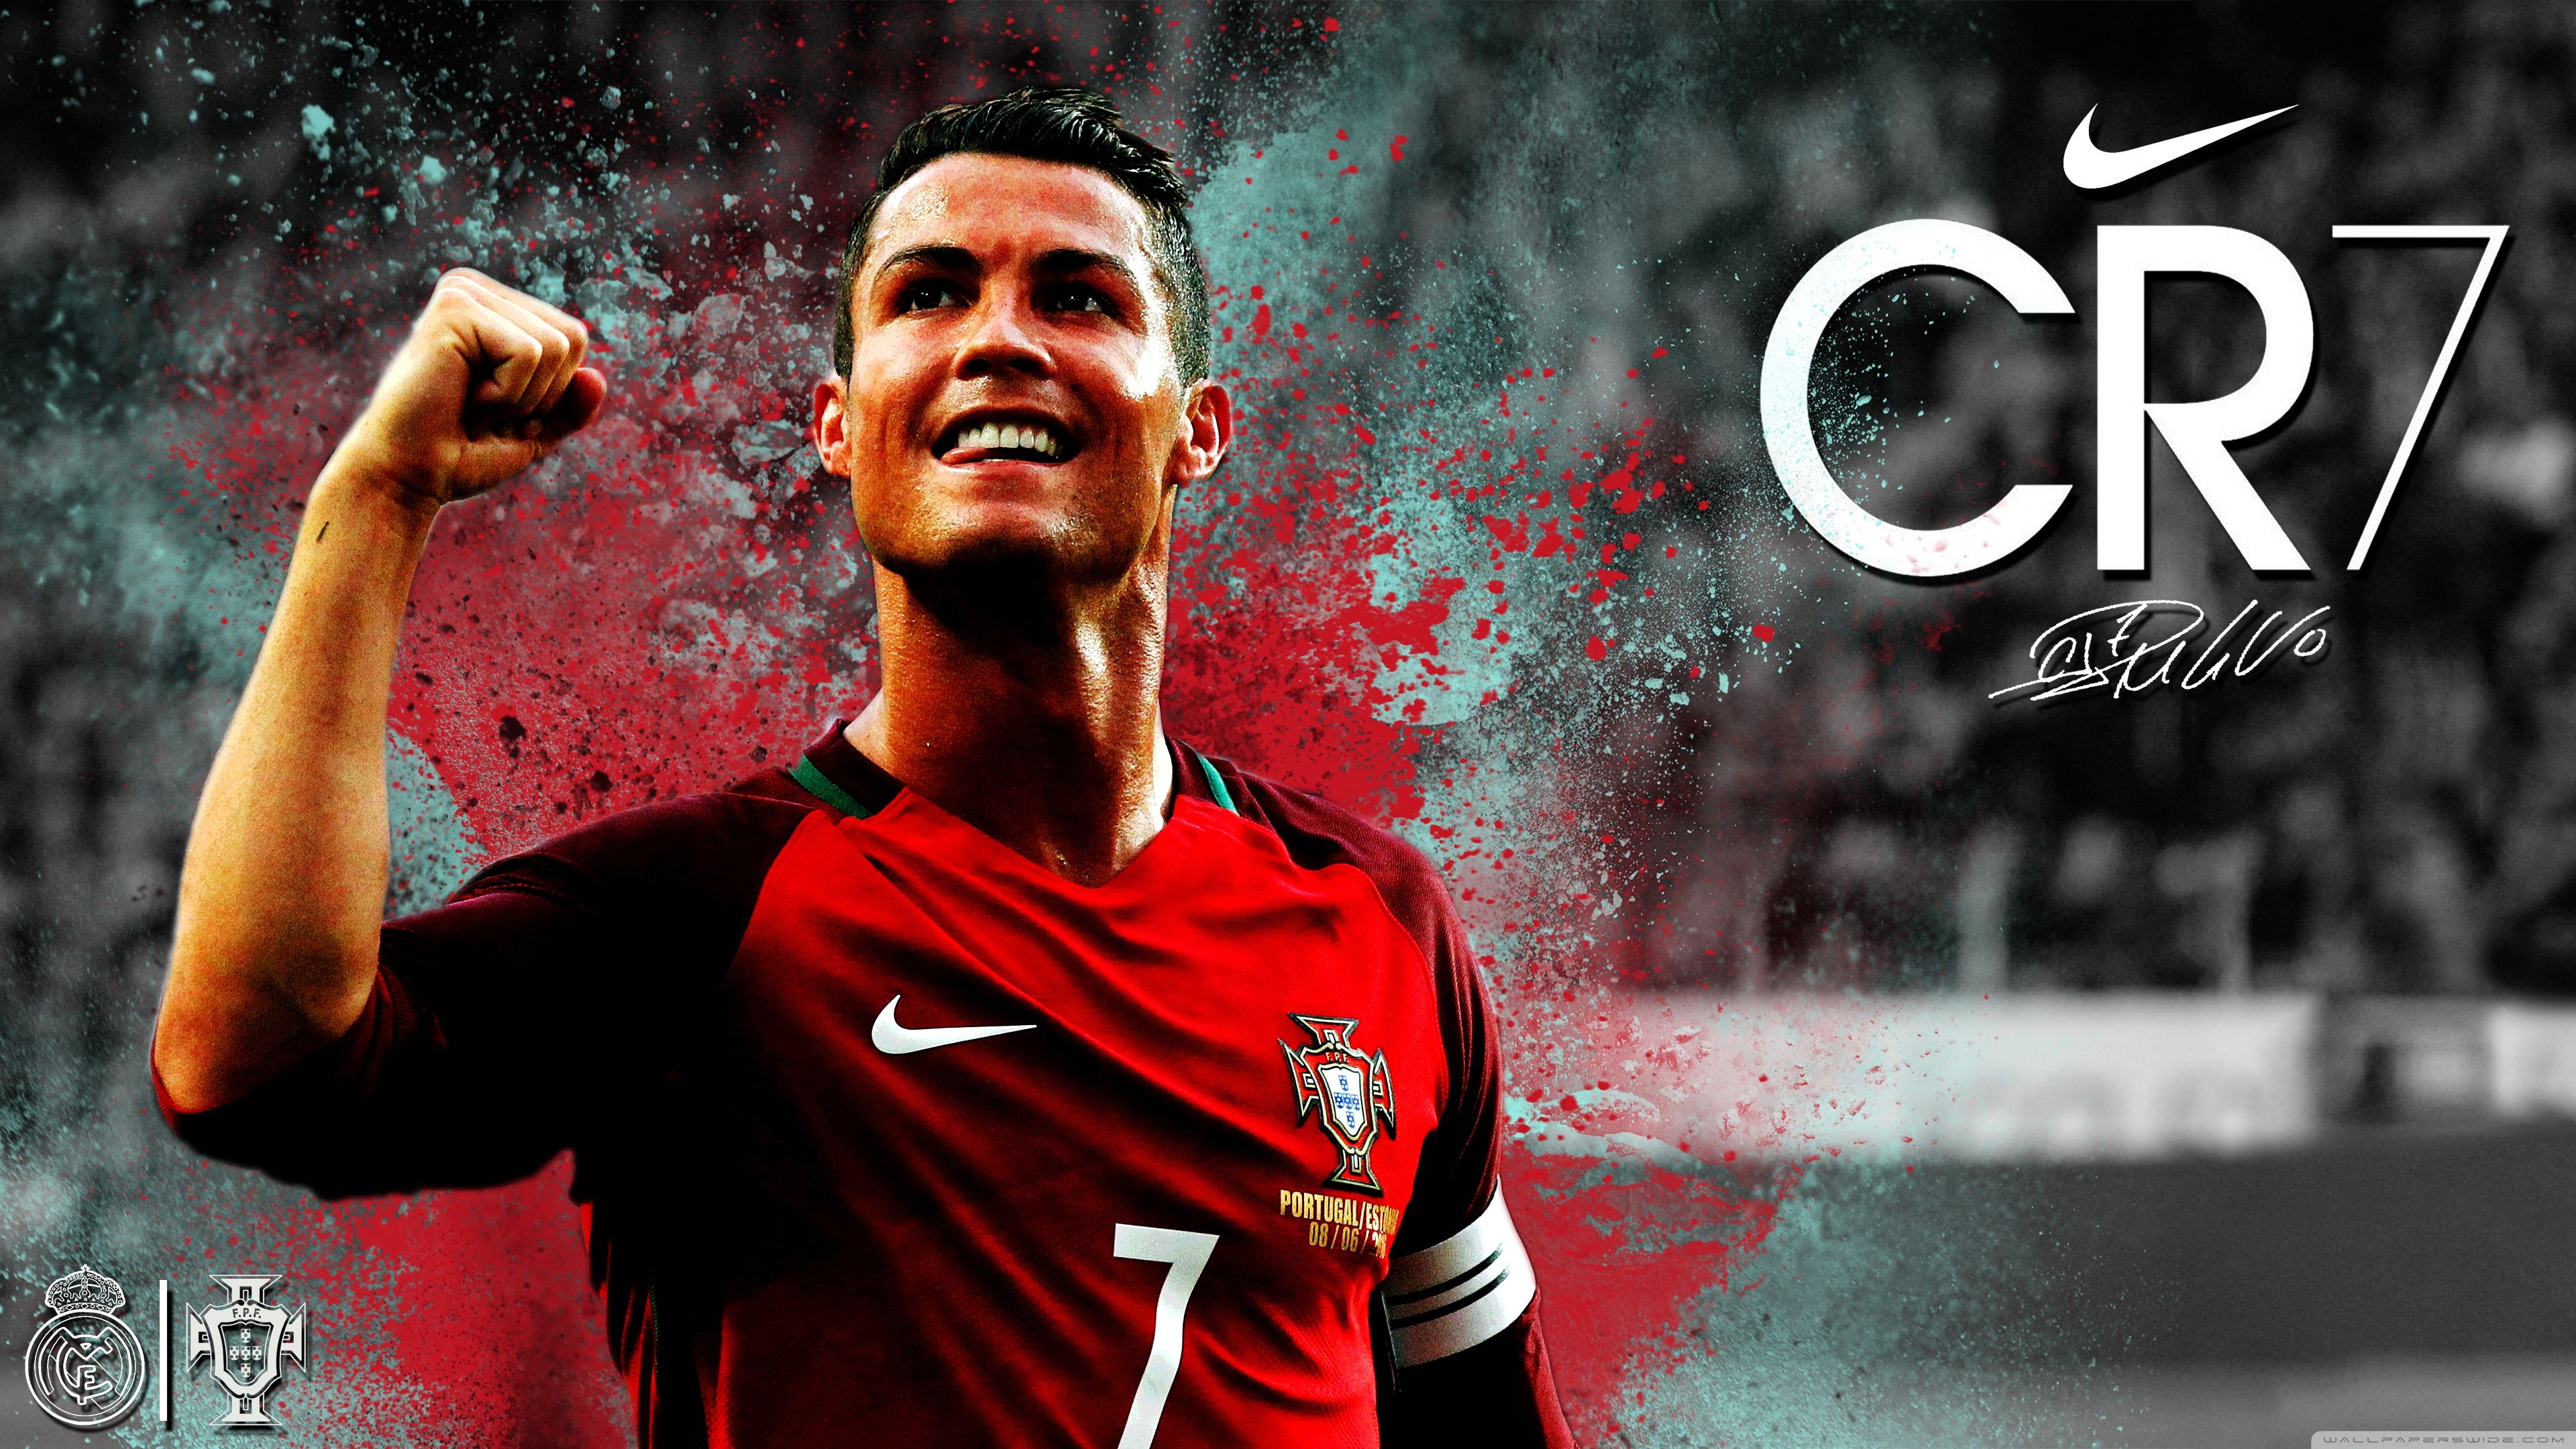 Cristiano Ronaldo UHD Wallpaper